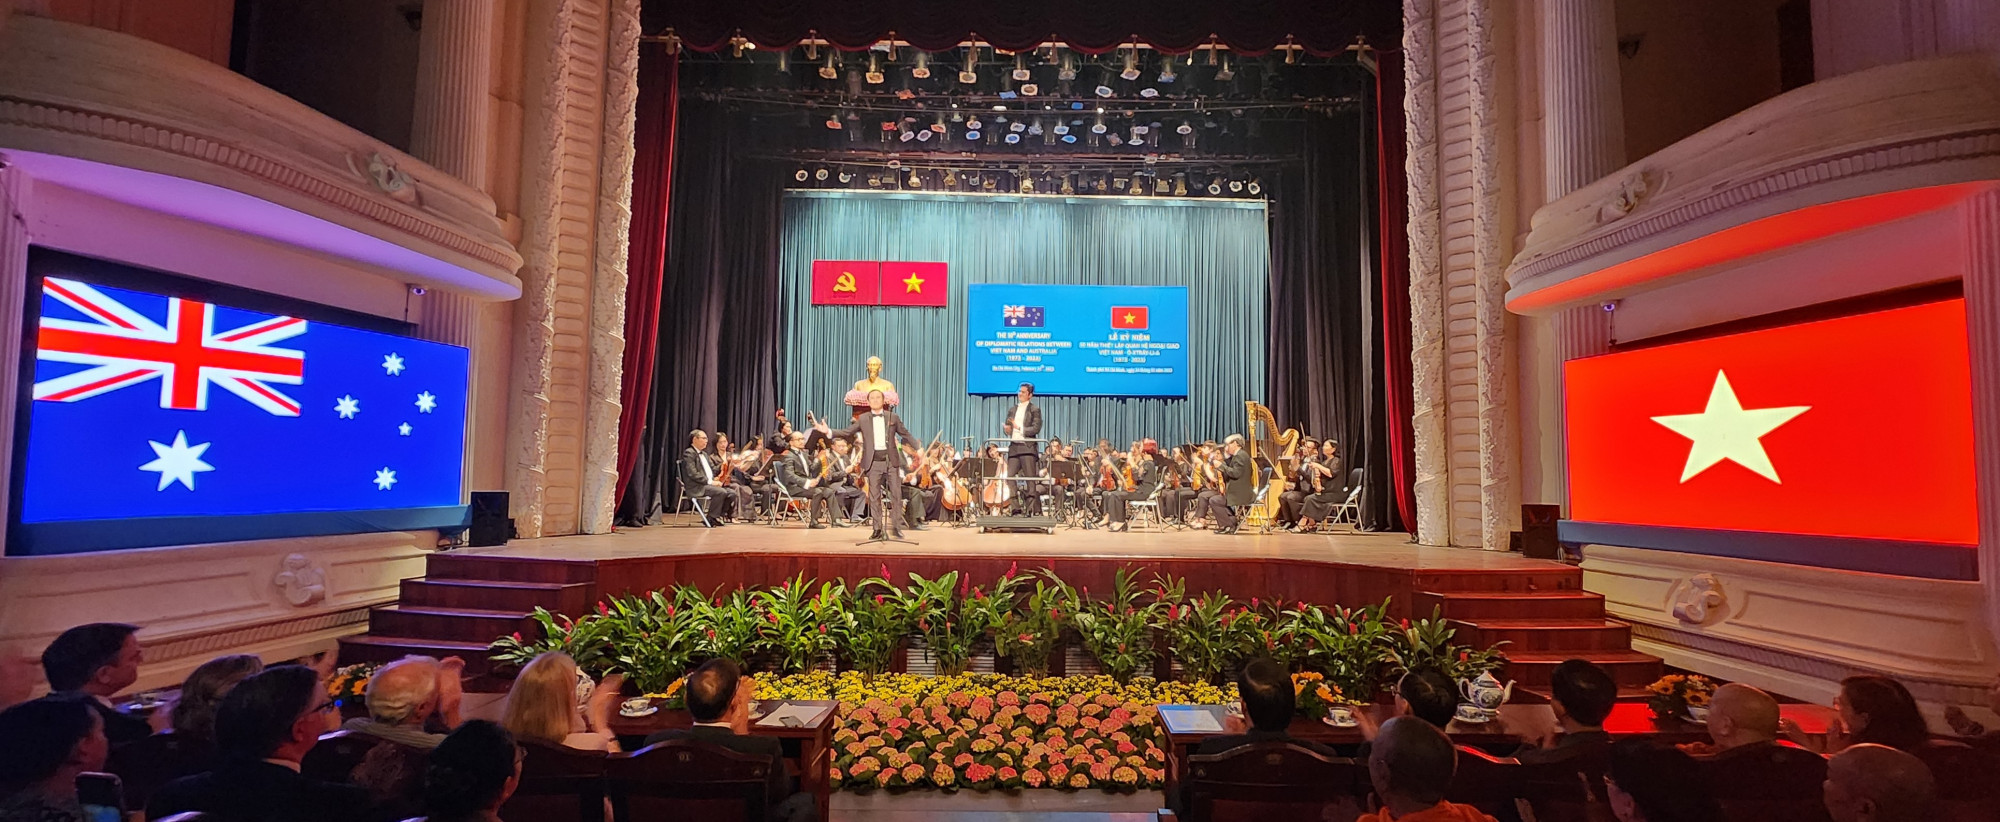 Lễ kỷ niệm 50 năm quan hệ Việt – Úc diễn ra với sự góp mặt của các nghệ sĩ từ hai nước